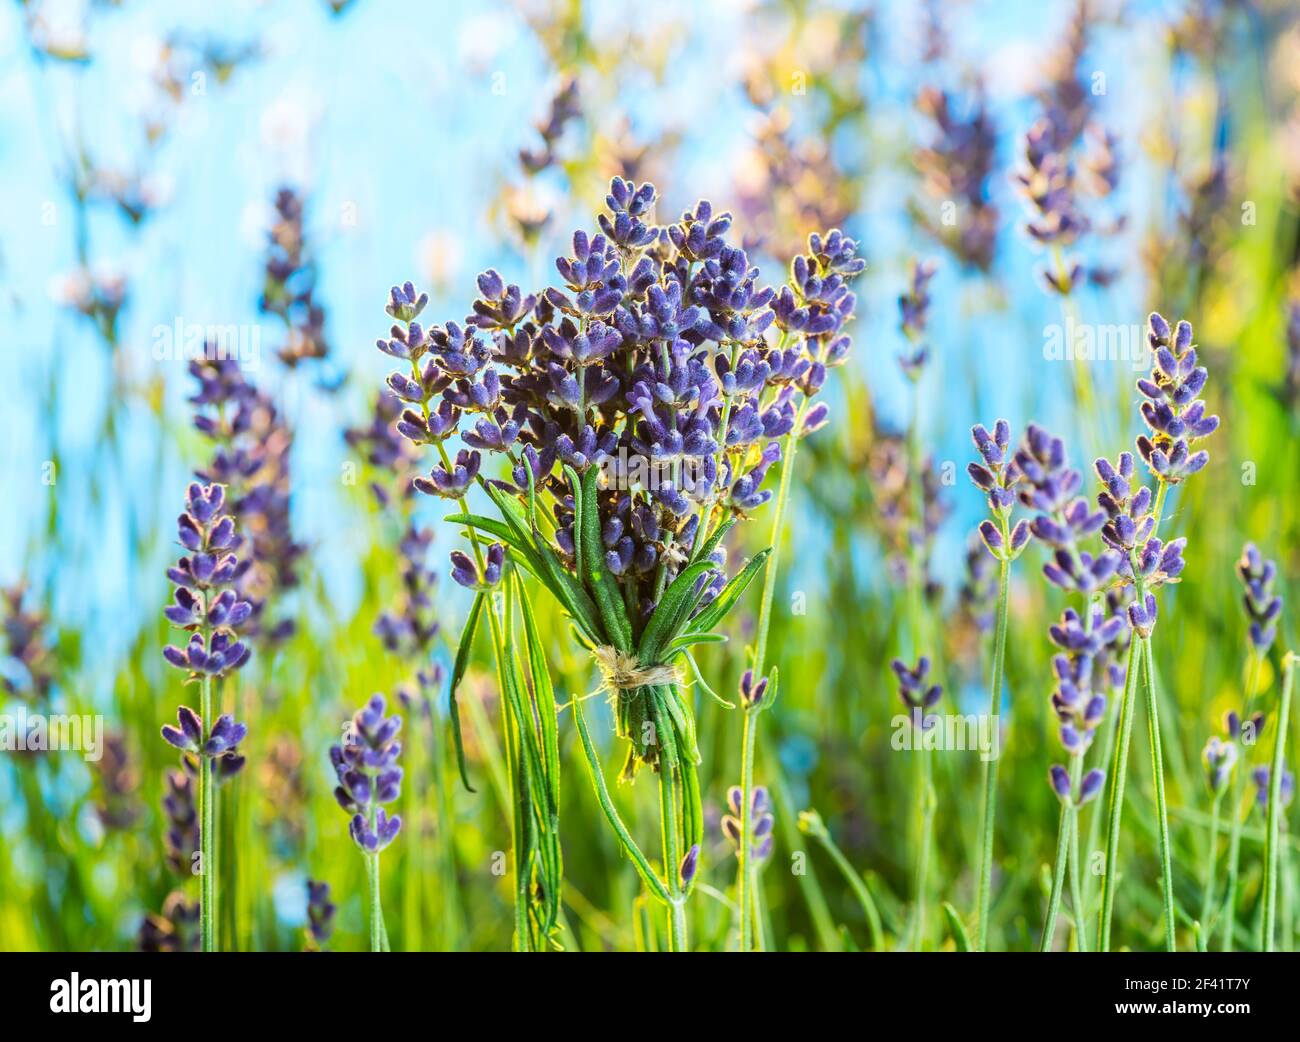 Feld von jungen Lavendel blühenden Pflanzen Nahaufnahme. Blauer Himmel im Hintergrund. Stockfoto